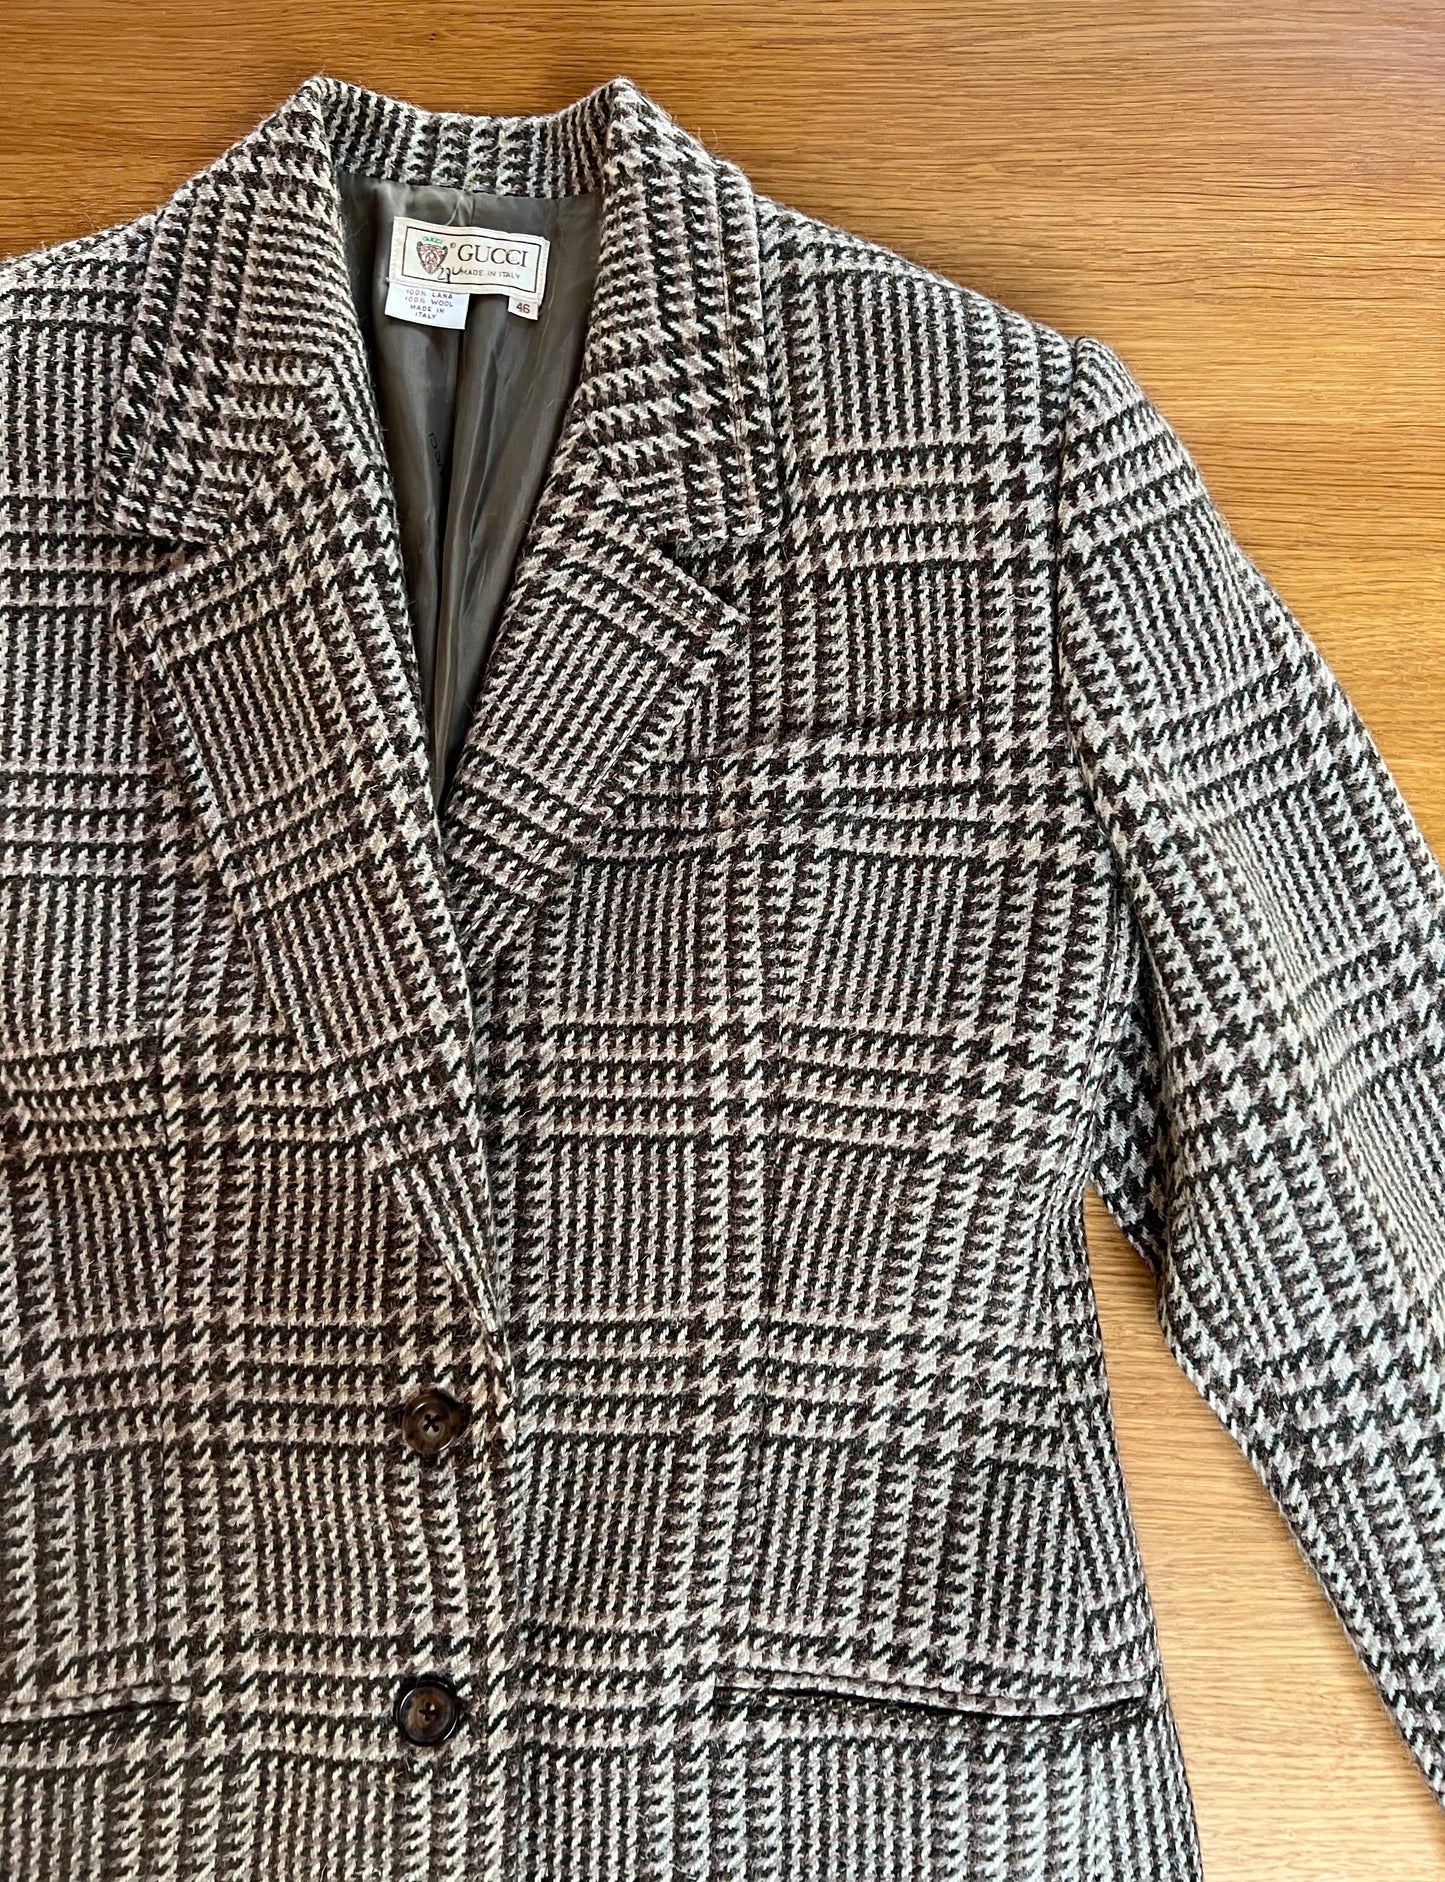 Vintage Tweed Jacket - S